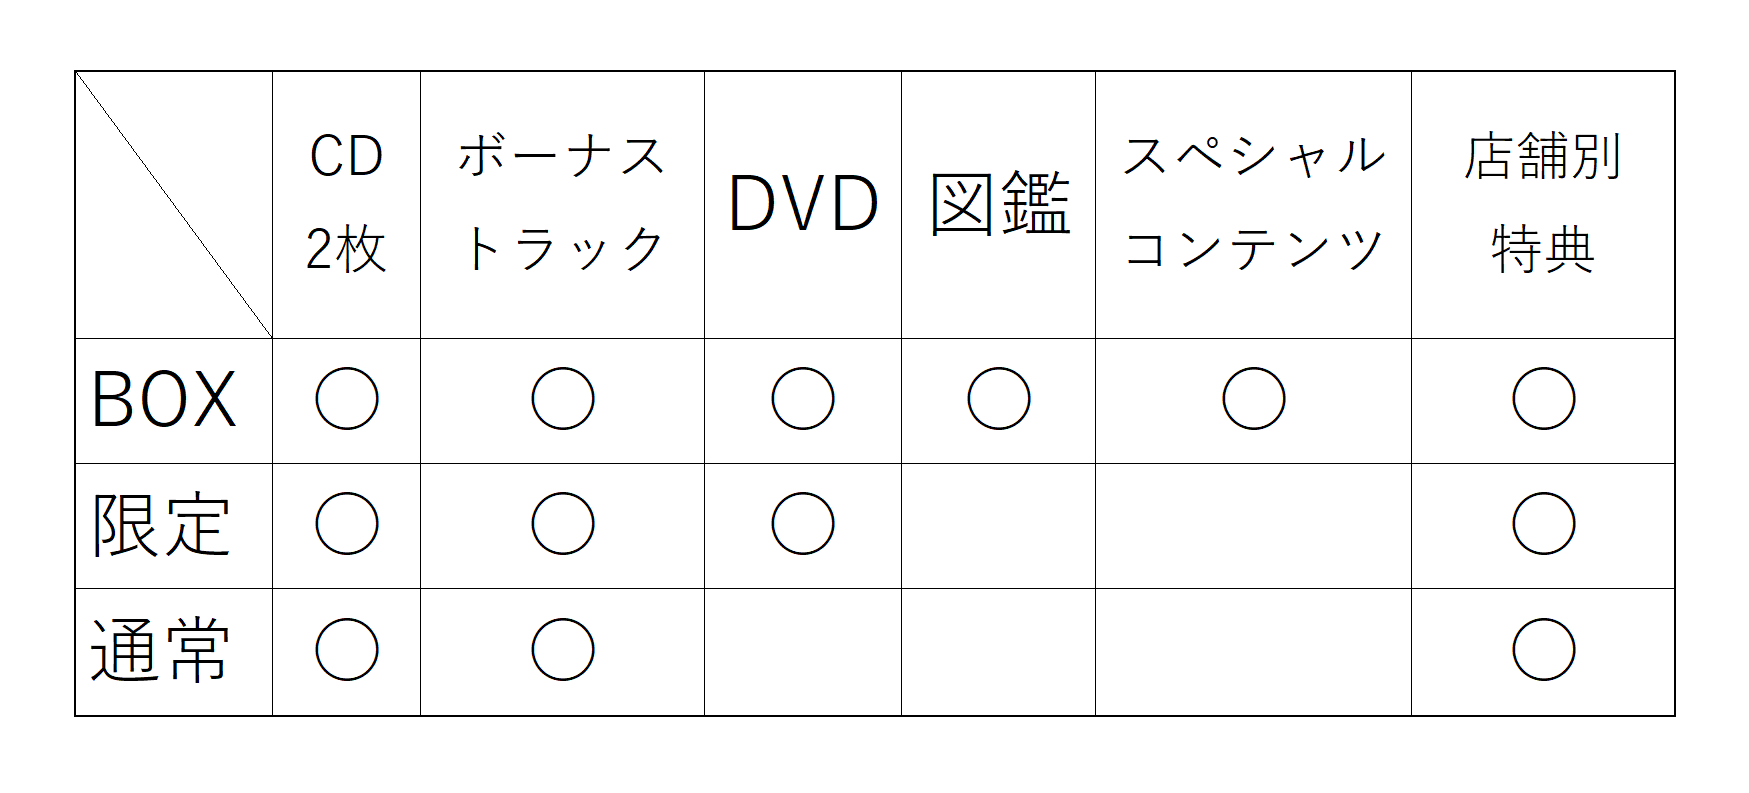 ベストアルバム Sekai No Owari 10 19 収録曲 発売日 特典 価格は 随時更新 ハル次郎のブログ